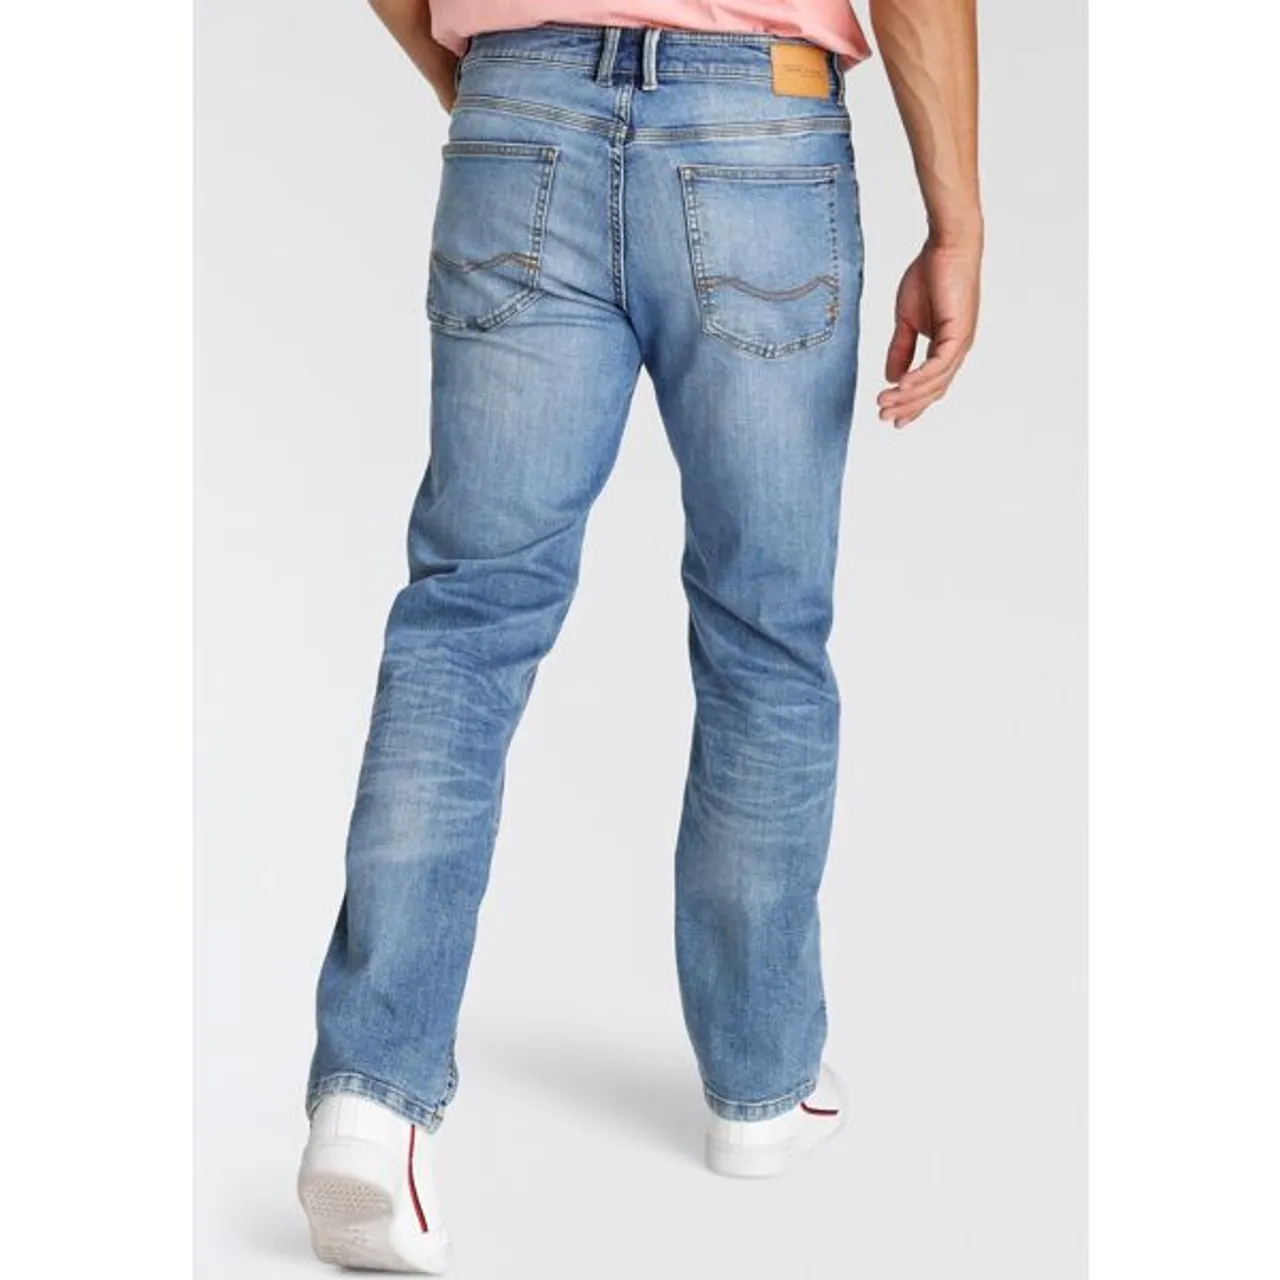 5-Pocket-Jeans CAMEL ACTIVE "WOODSTOCK" Gr. 38, Länge 30, blau (ocean, blue30) Herren Jeans 5-Pocket-Jeans mit Stretch